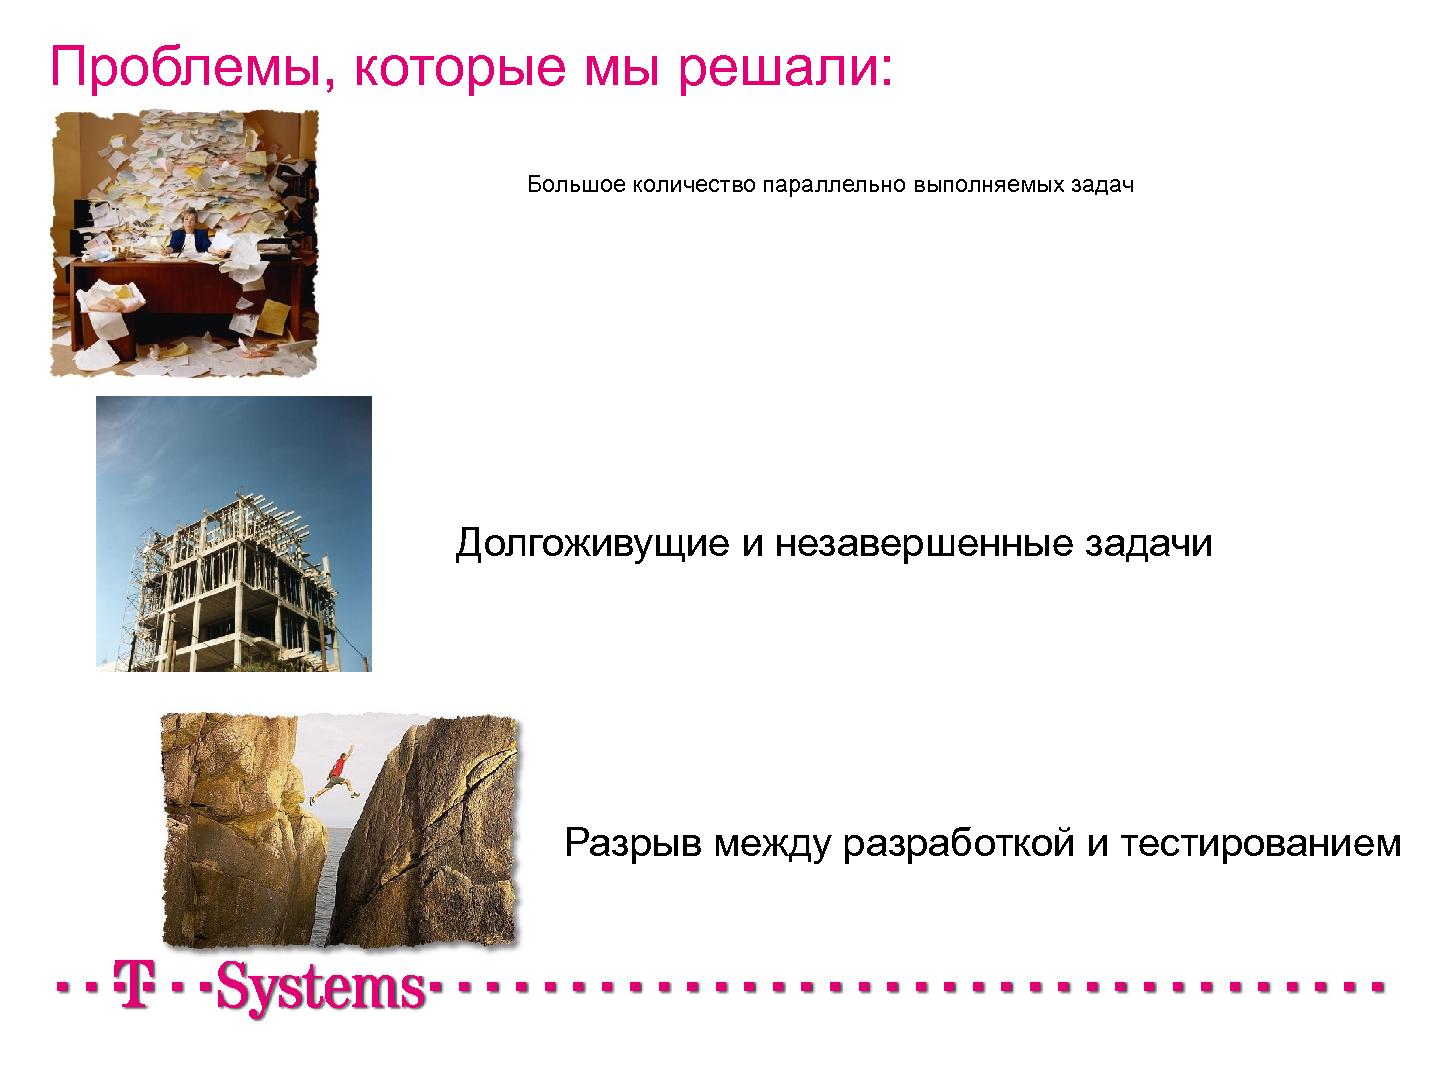 Файл:Как мы внедряли Kanban в проект (Иван Иванов, Герман Крюков, SECR-2012) .pdf